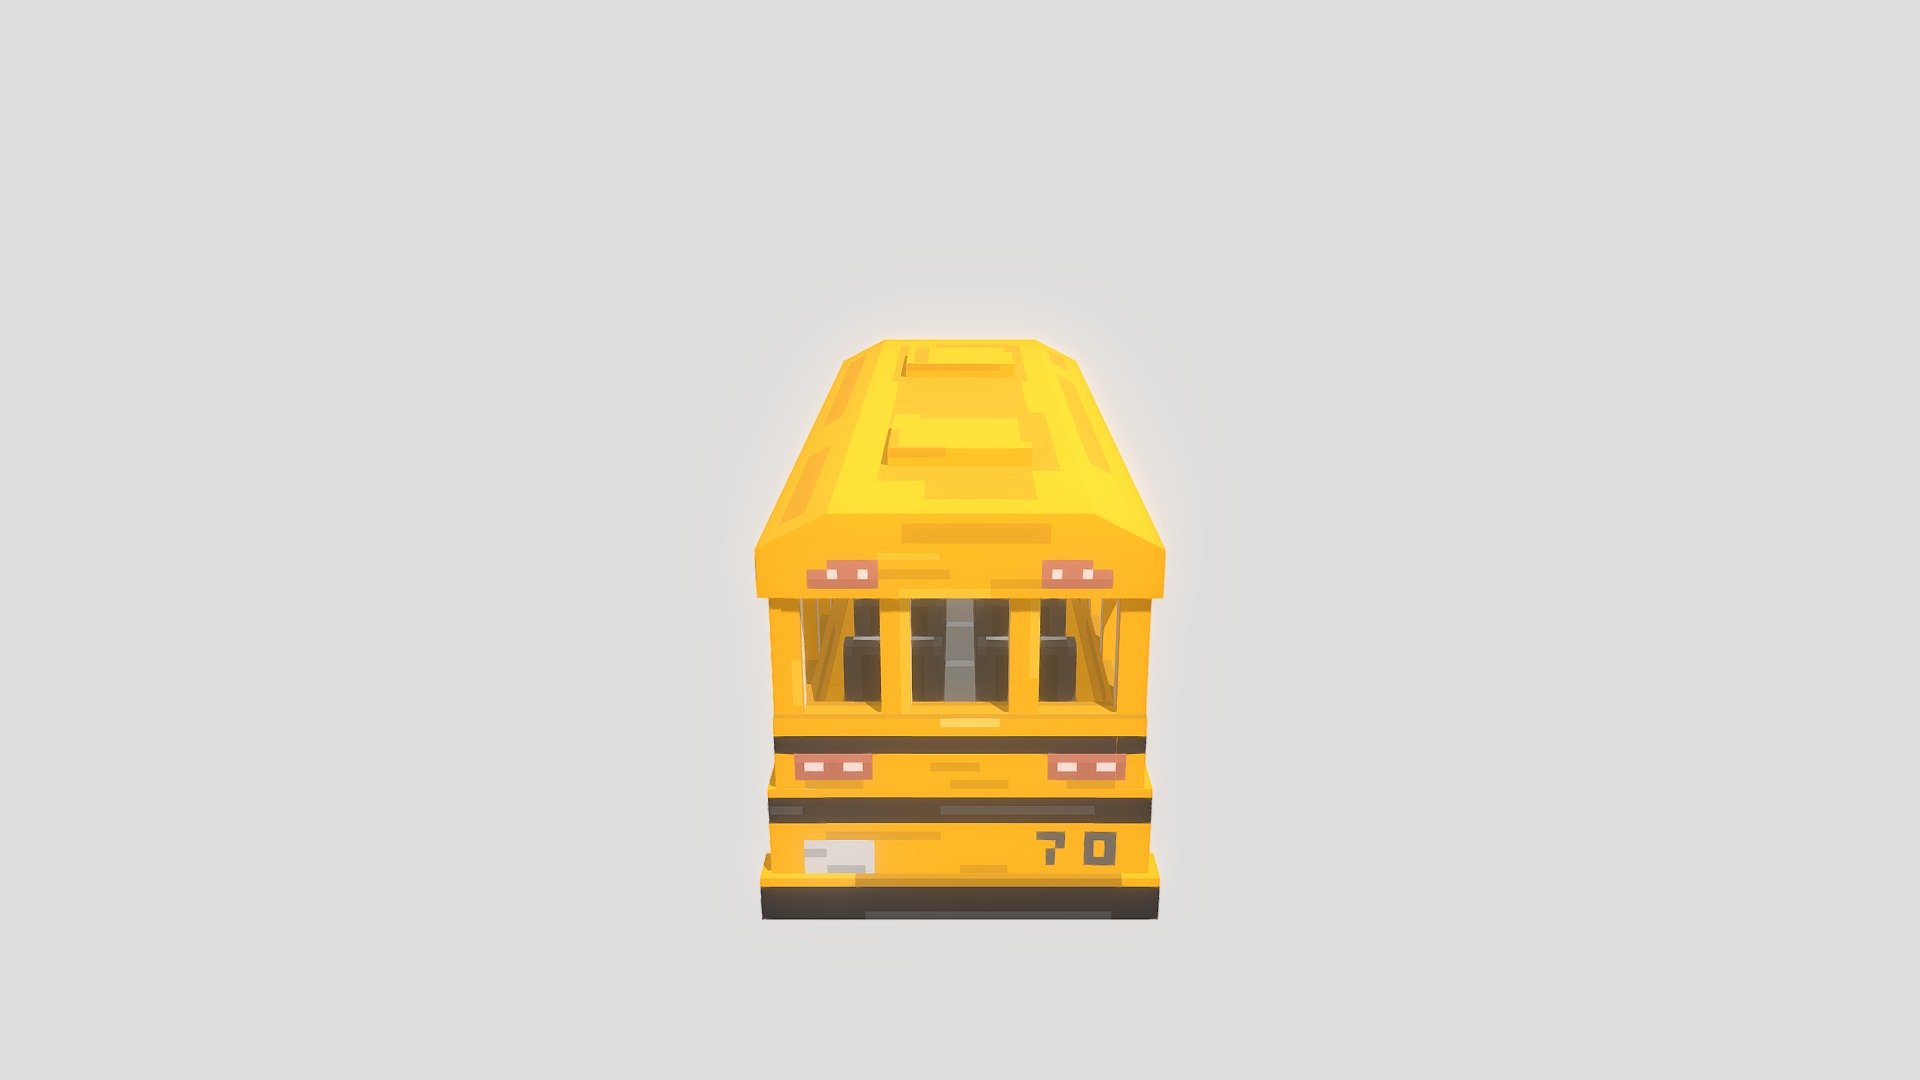 School Bus working - #14 - School Bus / 3D MODELING - 3D model by Emrily 3d model